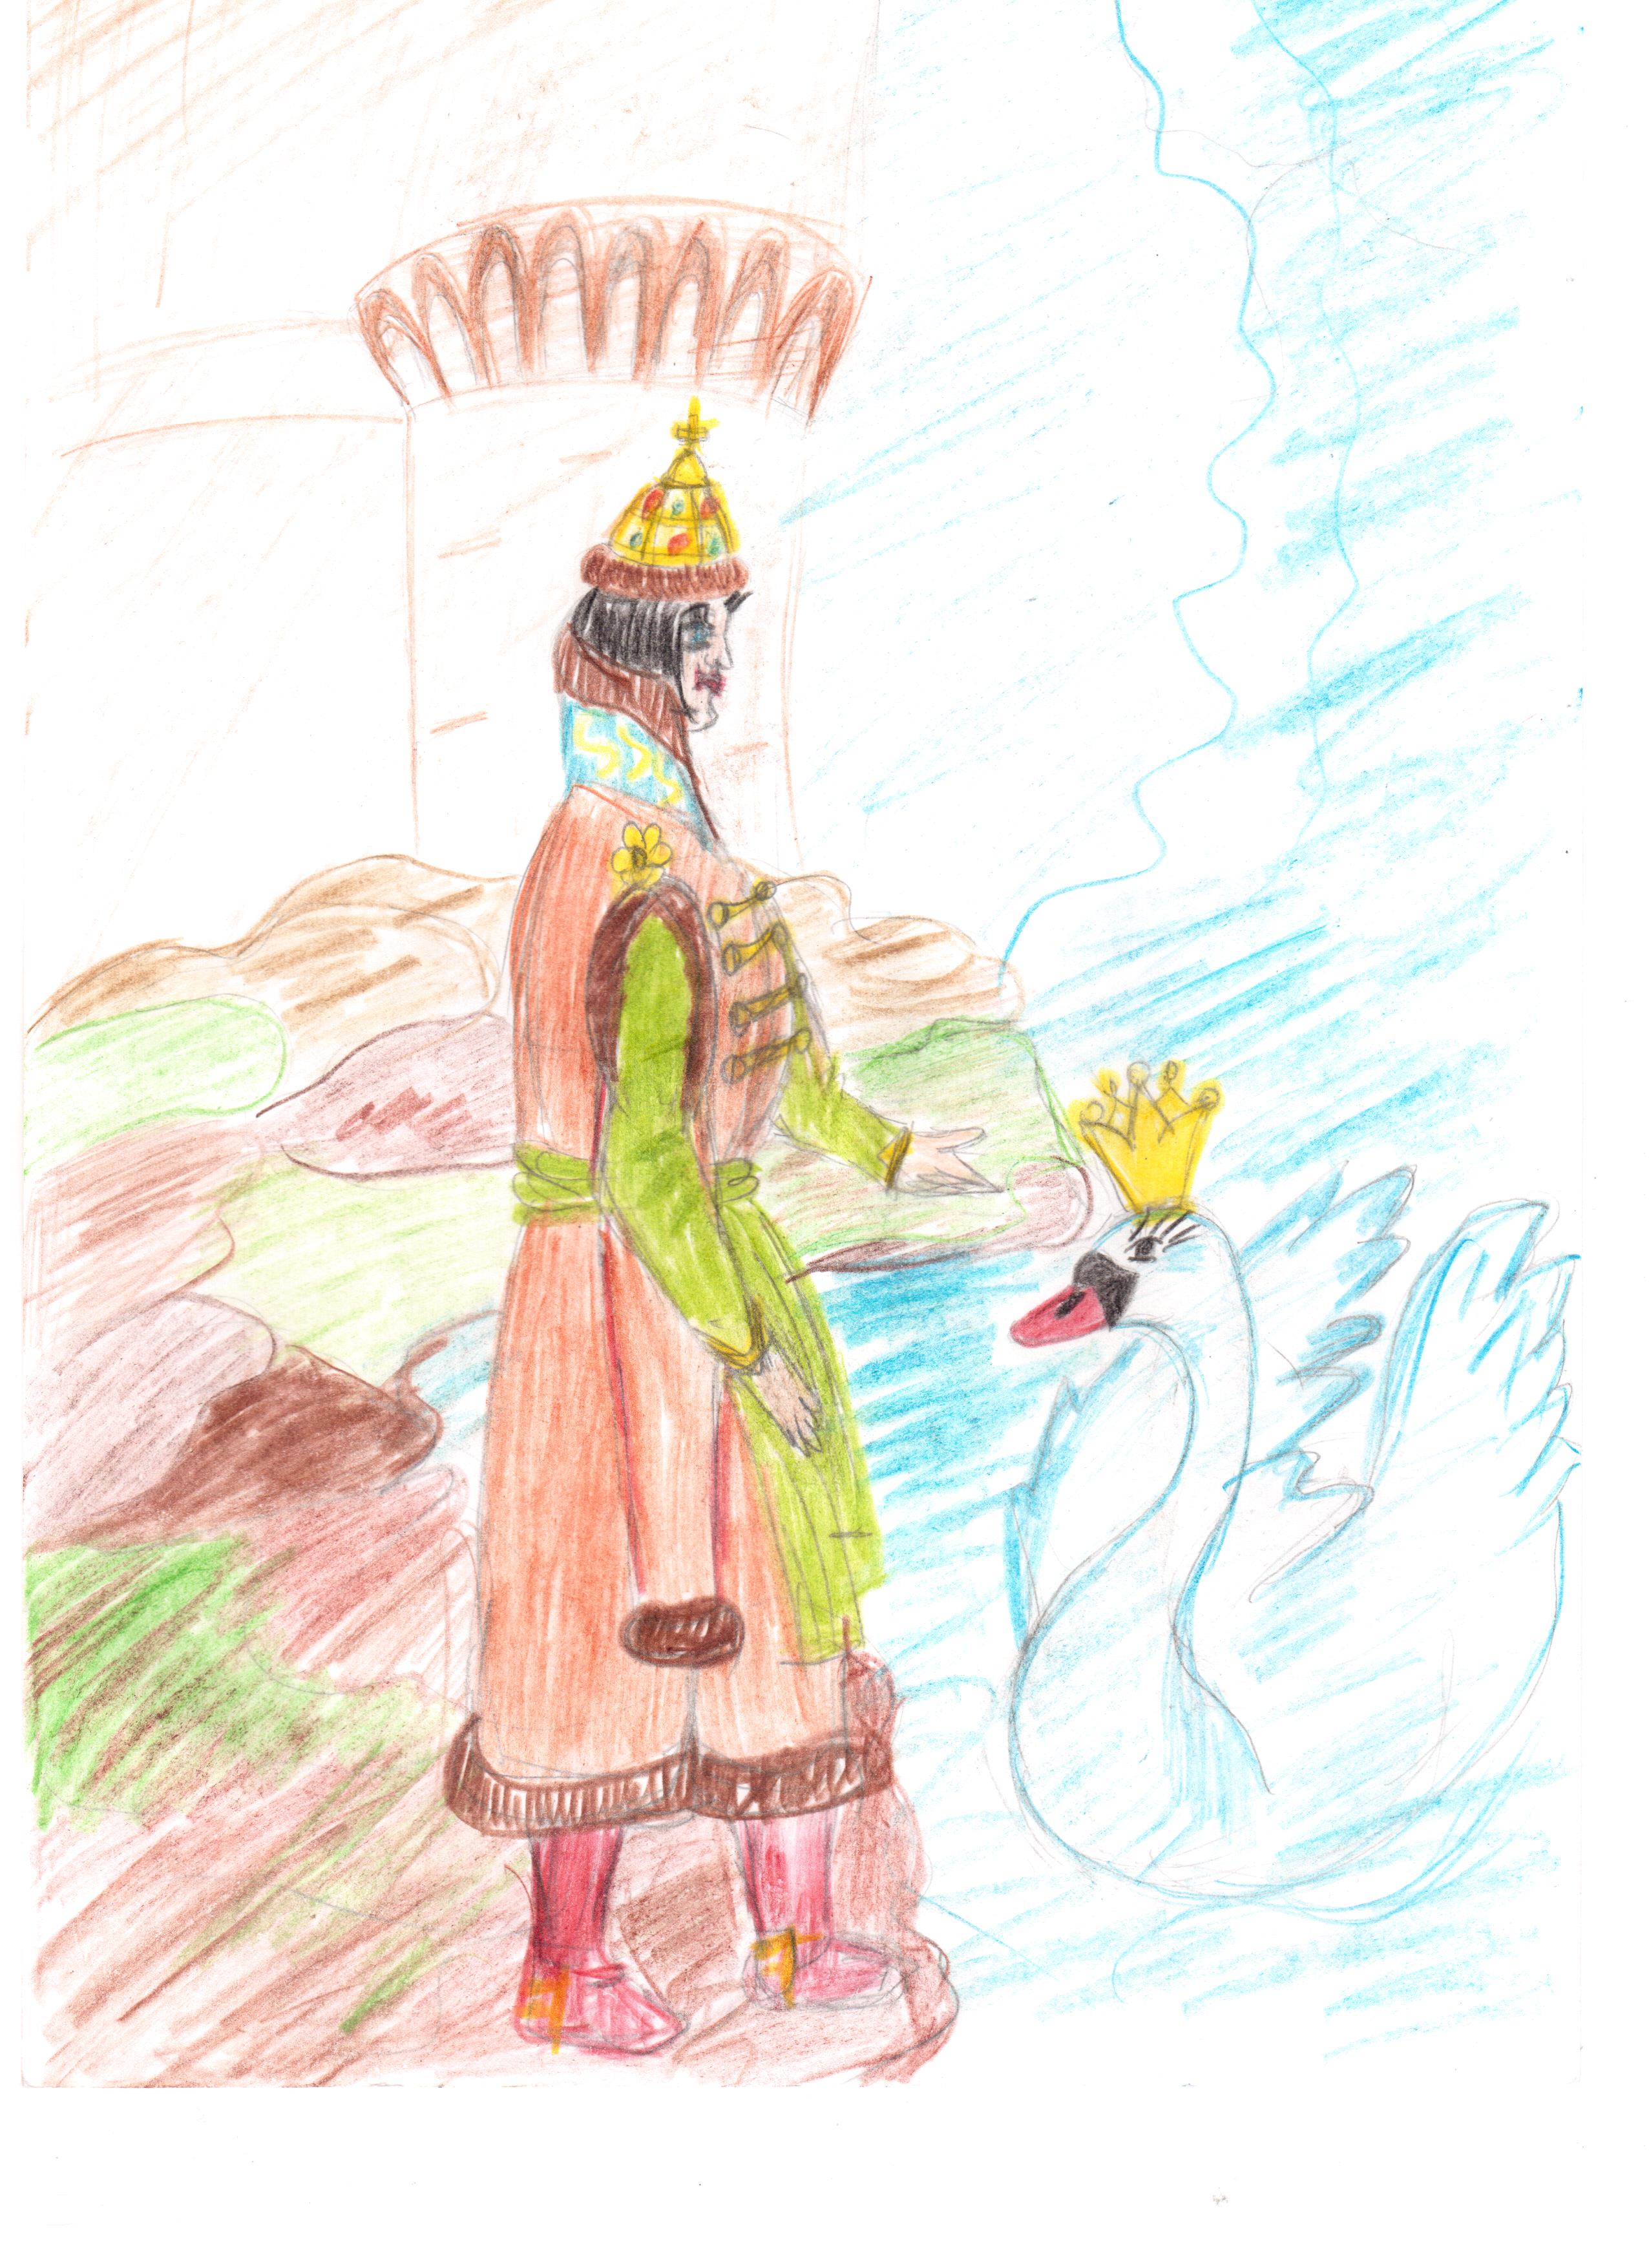 Рисунок к сказке о царе салтане для начинающих